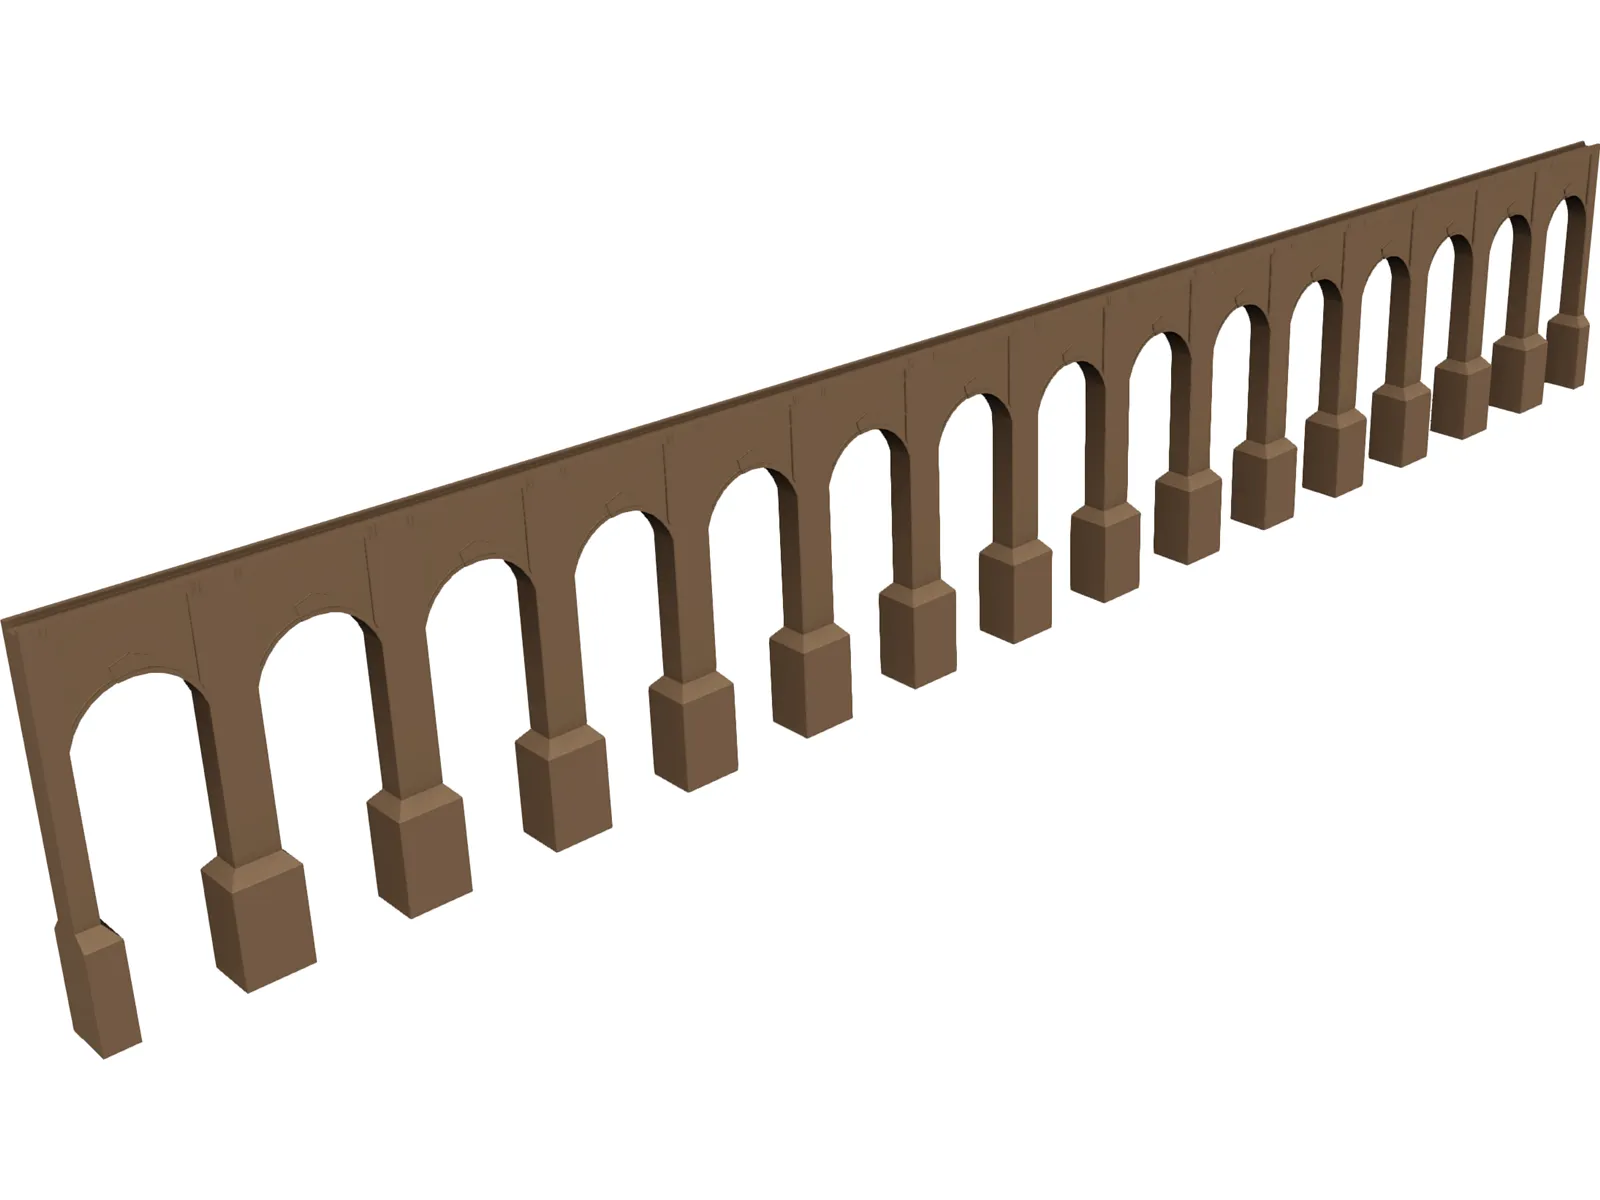 Aquaduct Bridge 3D Model